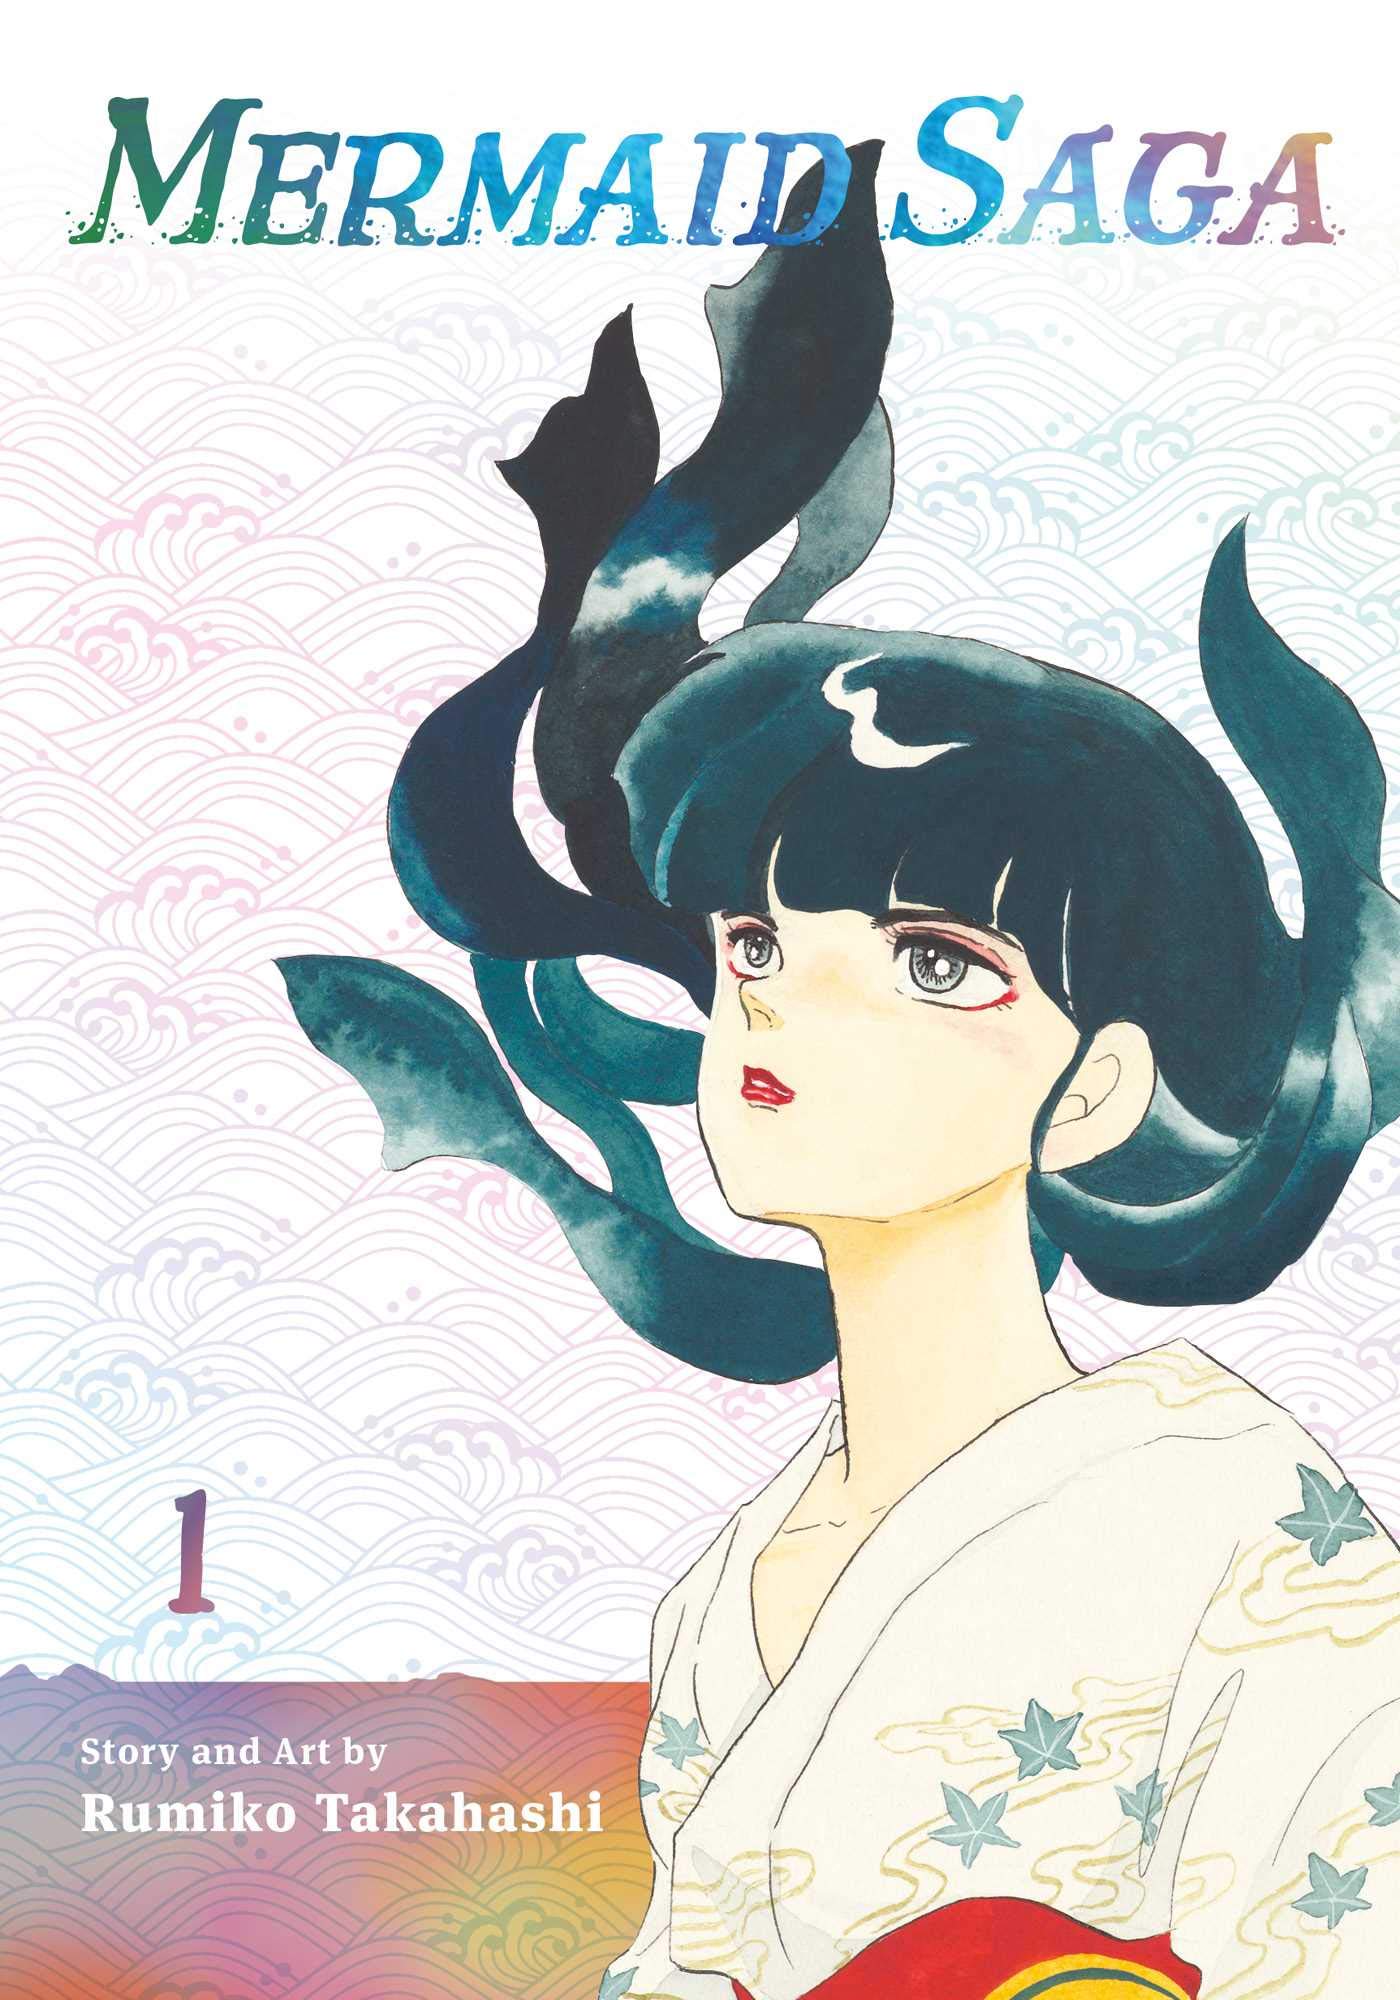 Mermaid Saga, by Rumiko Takhashi. Mangasplaining